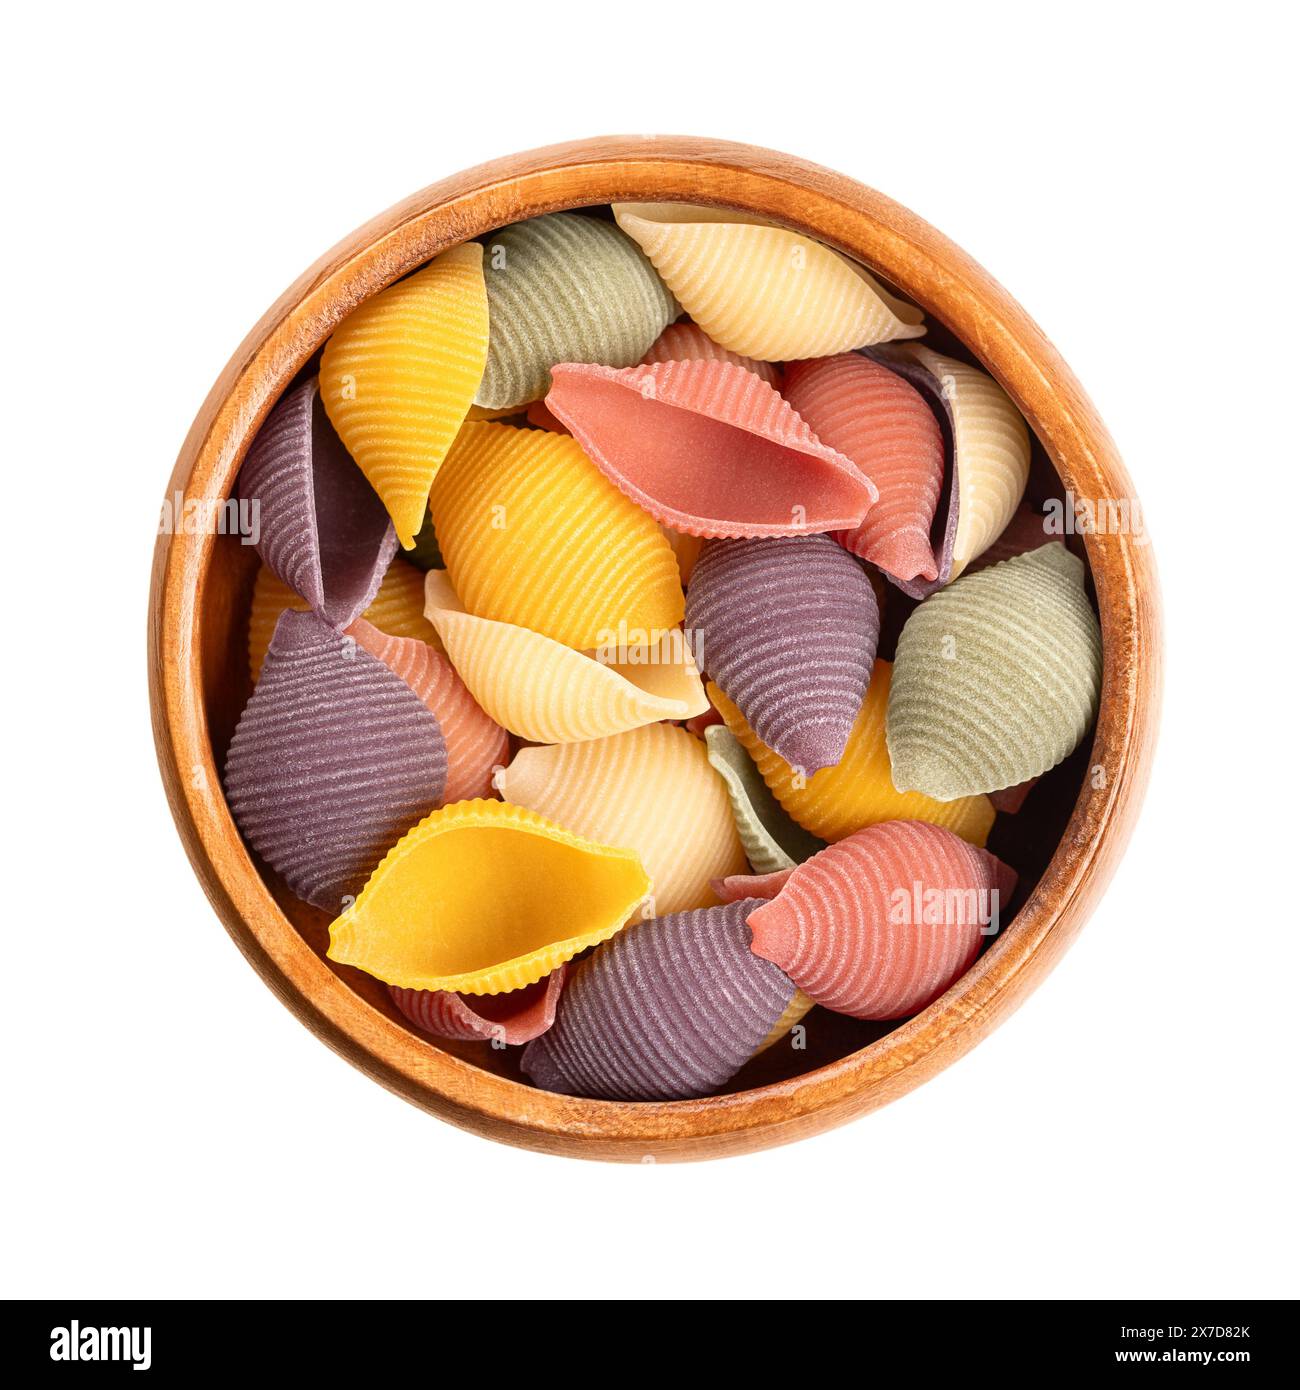 Conchiglie cinq couleurs, pâtes italiennes dans un bol en bois. Pâtes rondes, en forme de coquille et sillonnées, non cuites à la semoule de blé dur. Banque D'Images